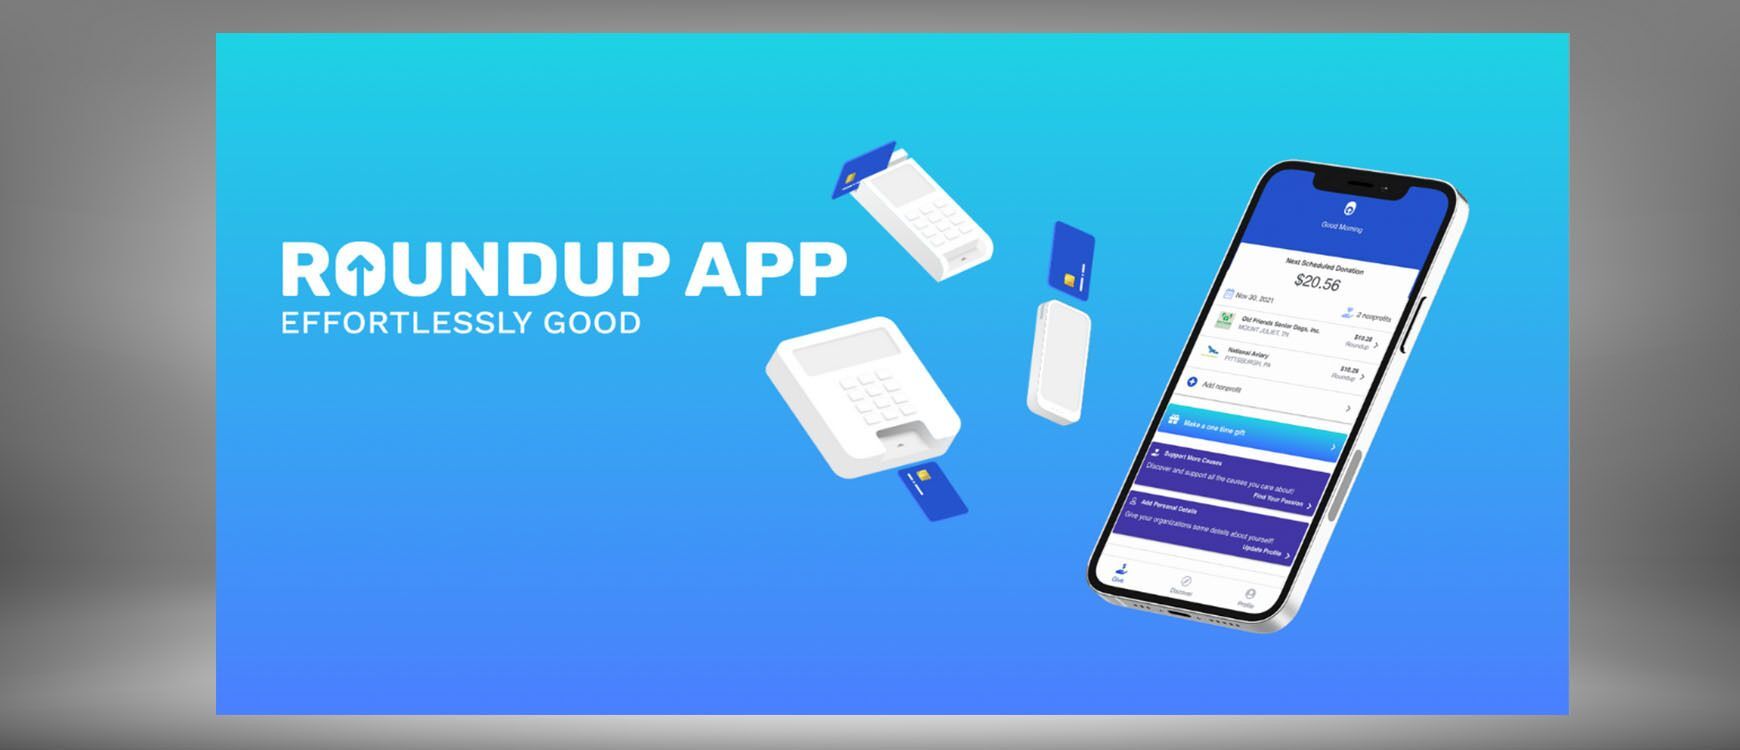 RoundUp App